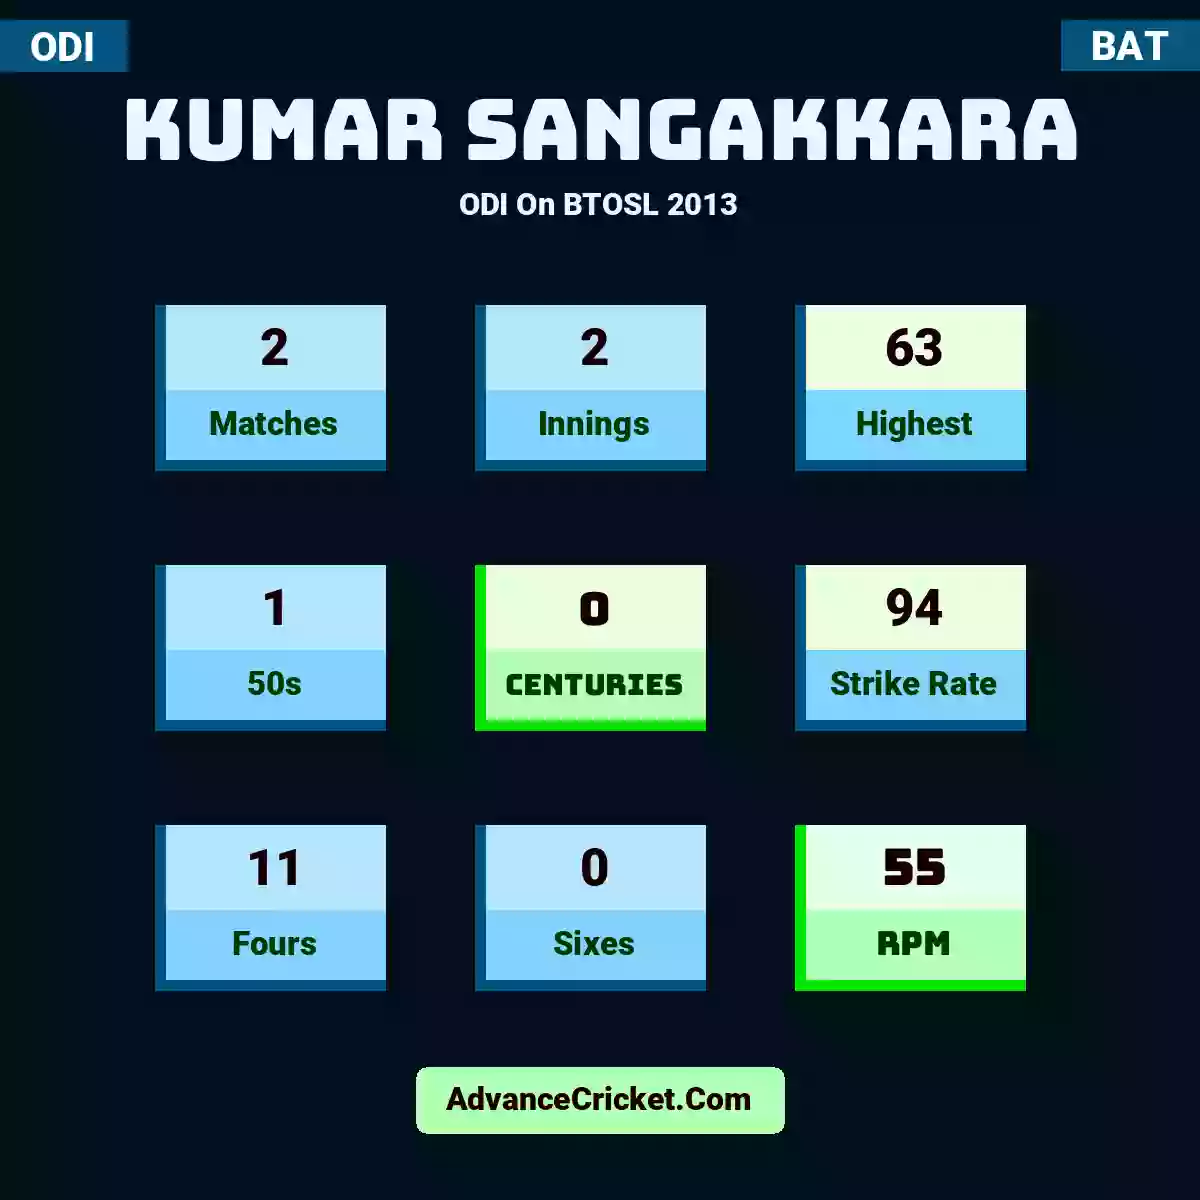 Kumar Sangakkara ODI  On BTOSL 2013, Kumar Sangakkara played 2 matches, scored 63 runs as highest, 1 half-centuries, and 0 centuries, with a strike rate of 94. K.Sangakkara hit 11 fours and 0 sixes, with an RPM of 55.